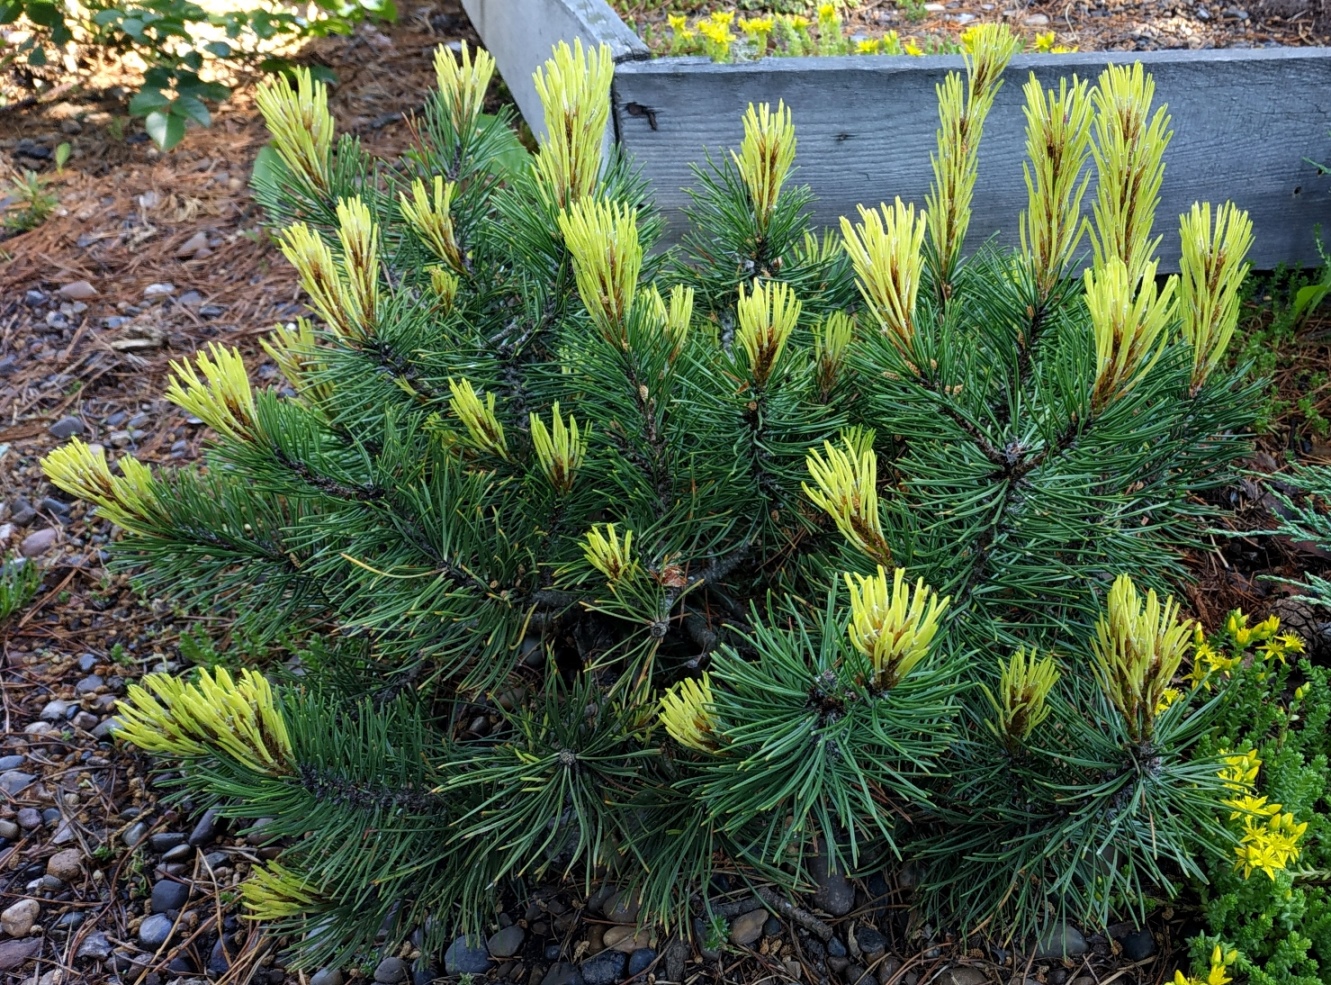 Pinus mugo Rositech. Фото сделано на нашем питомнике.